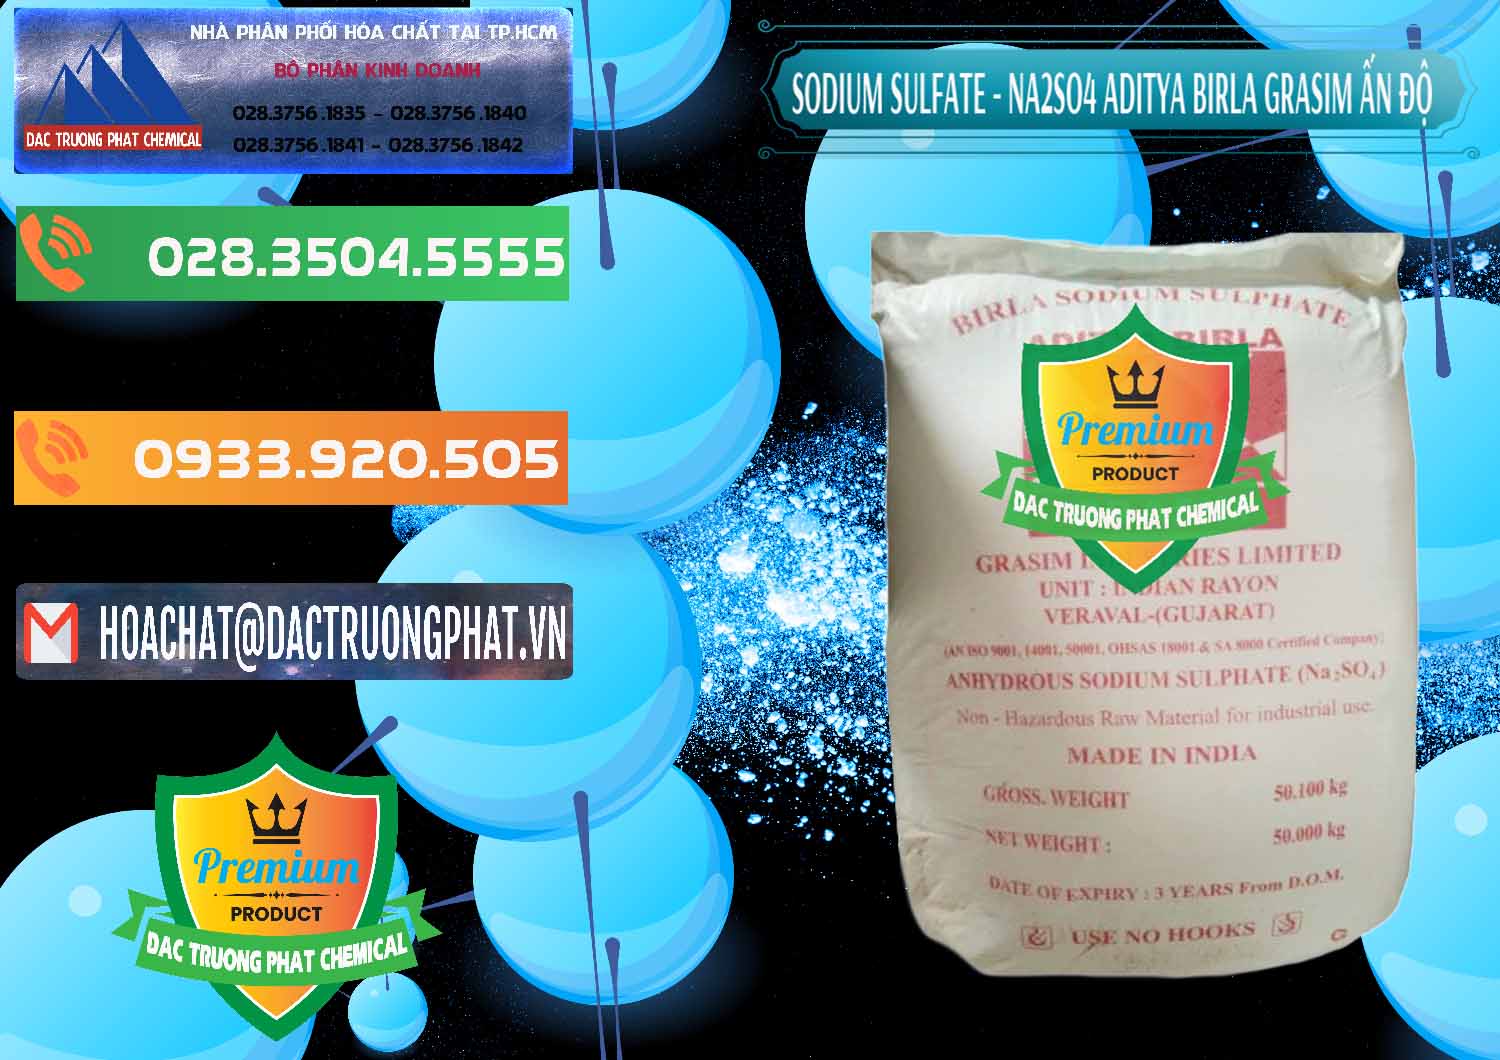 Cty chuyên bán & cung ứng Sodium Sulphate - Muối Sunfat Na2SO4 Grasim Ấn Độ India - 0356 - Công ty chuyên phân phối - cung ứng hóa chất tại TP.HCM - hoachatxulynuoc.com.vn